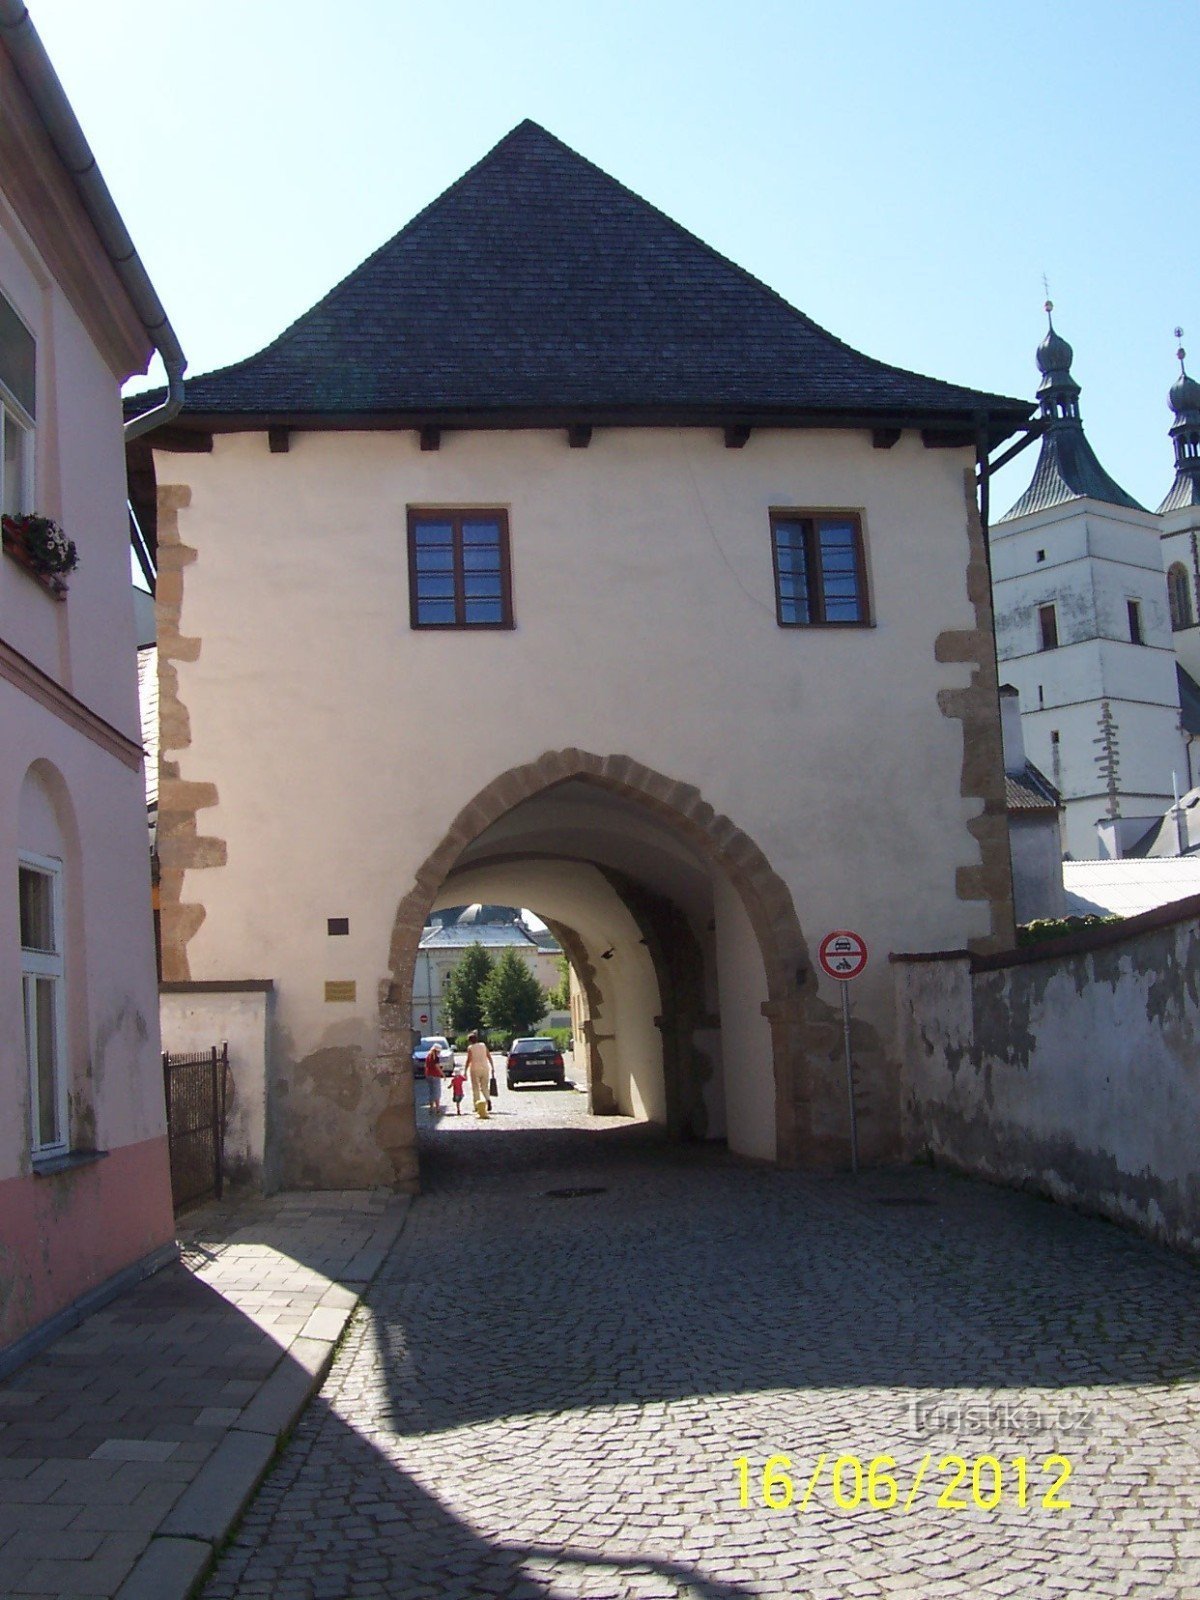 Portão Medel na entrada do centro